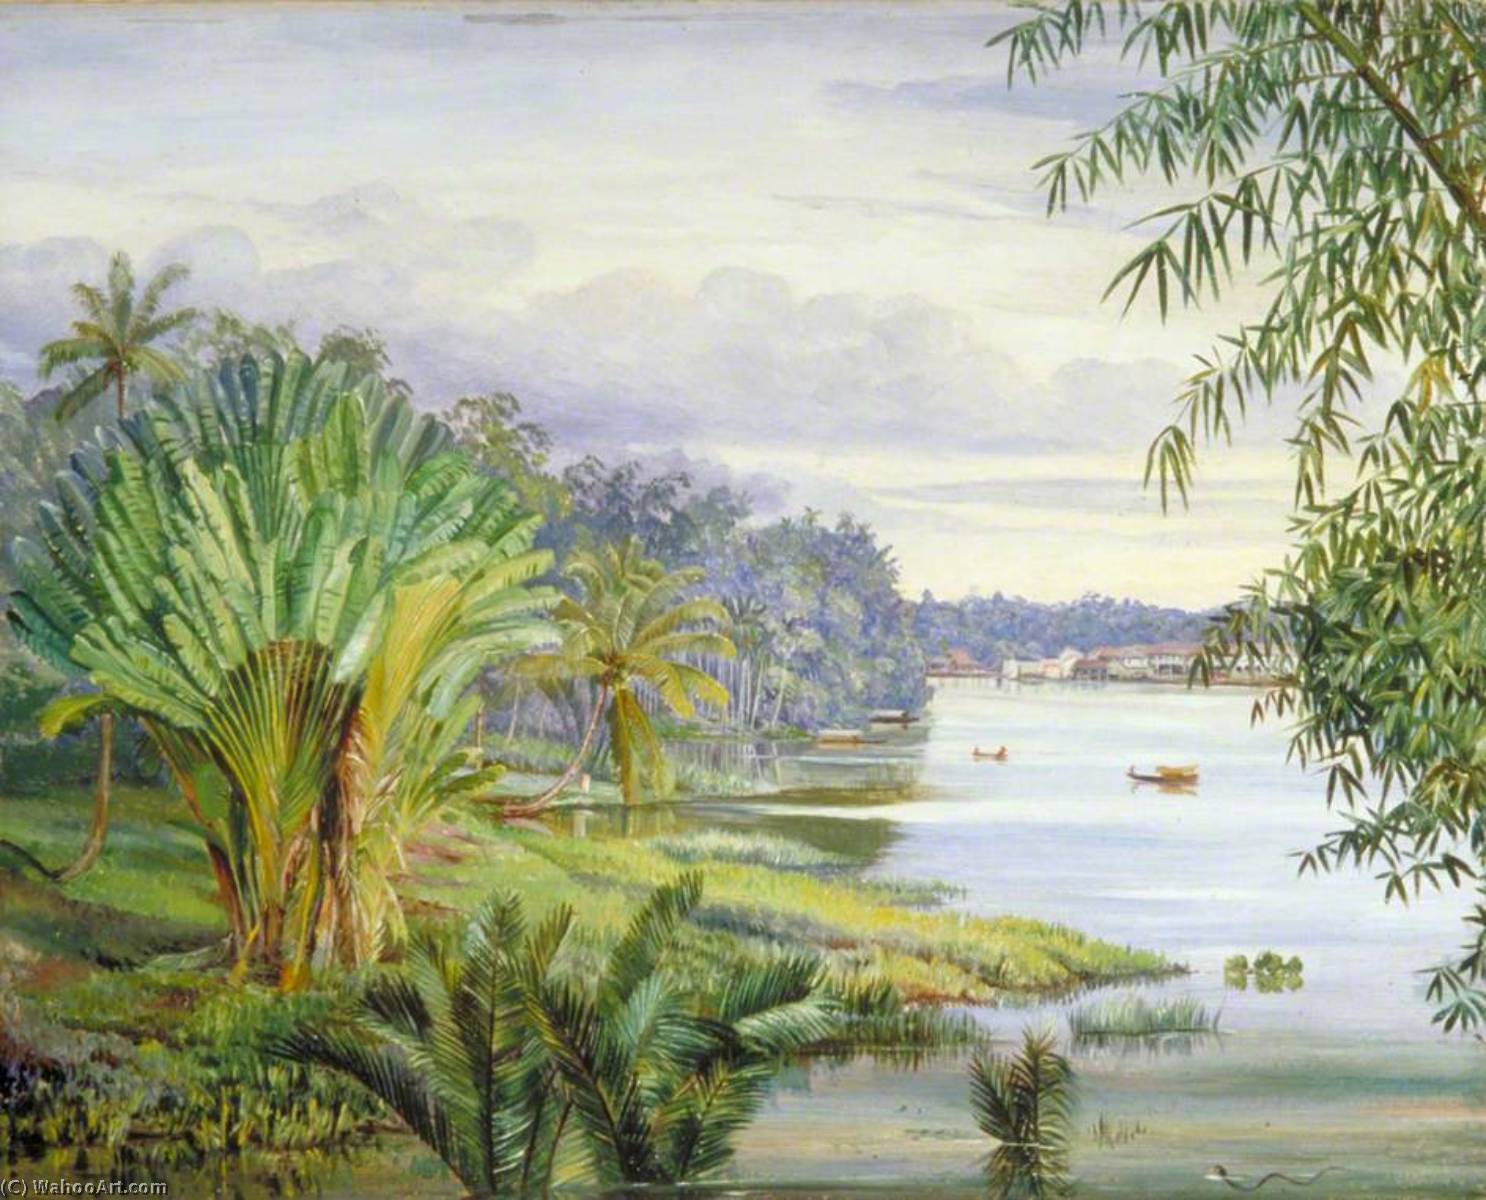 WikiOO.org - Enciklopedija likovnih umjetnosti - Slikarstvo, umjetnička djela Marianne North - View of Kuching and River, Sarawak, Borneo